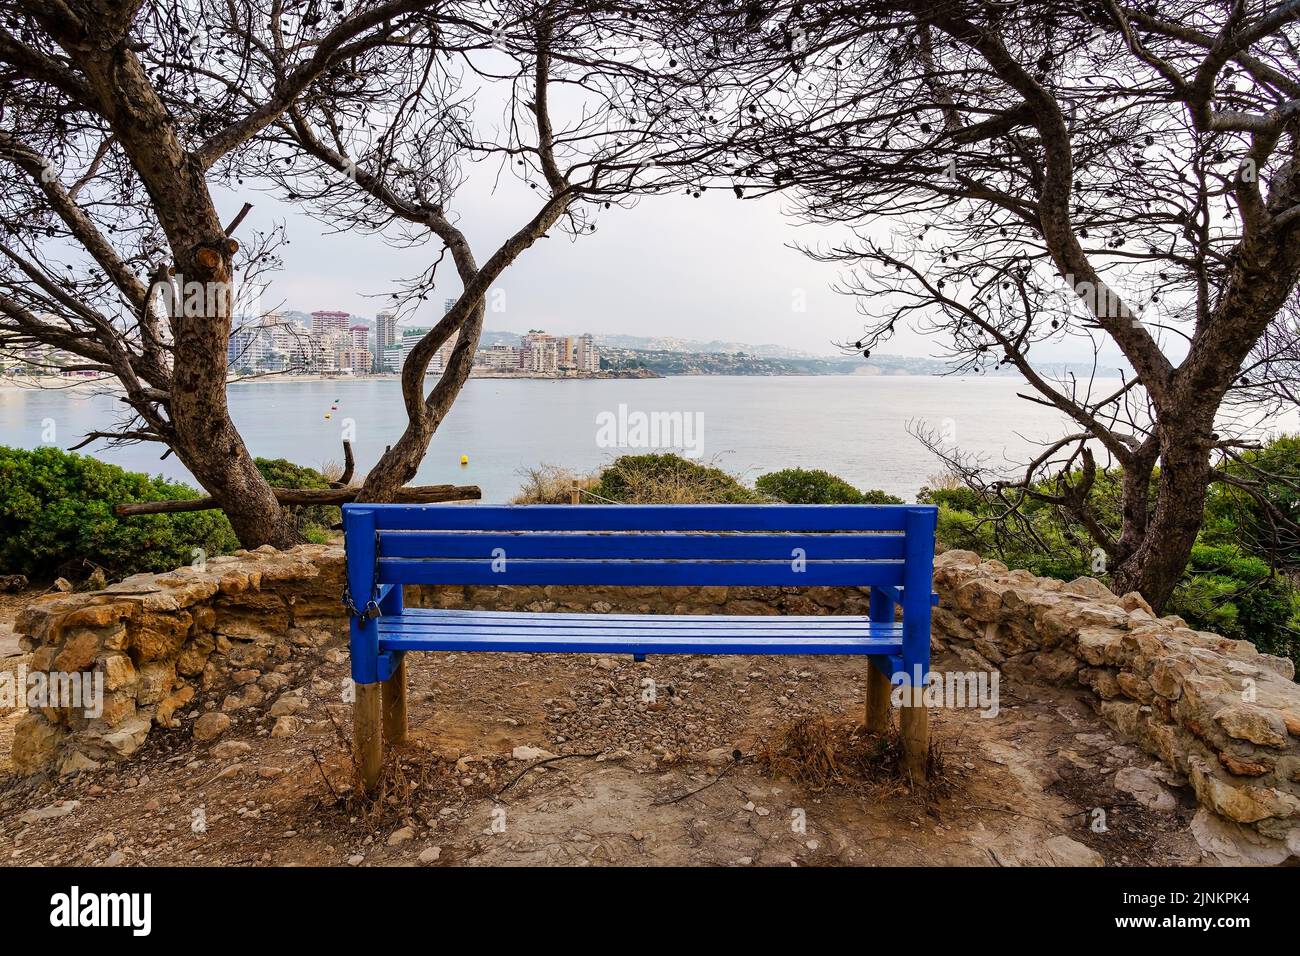 Banc pour s'asseoir et contempler le paysage marin avec la ville au bord de la mer. Calpe Alicante. Banque D'Images